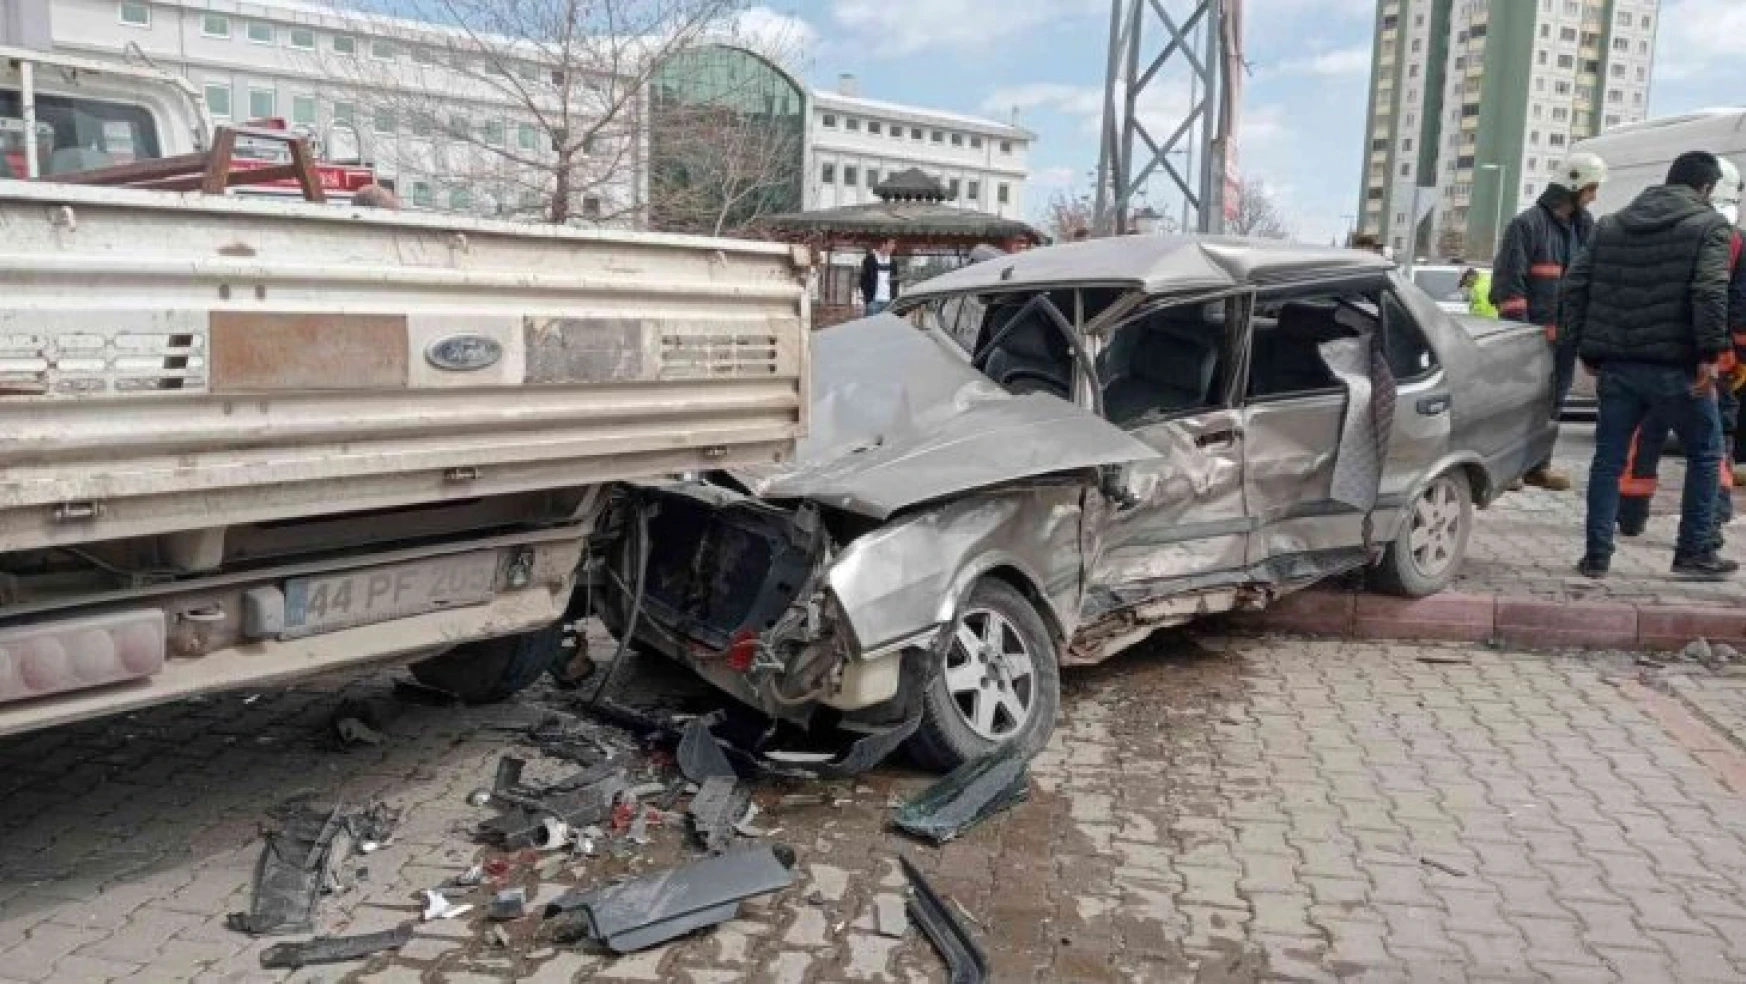 Malatya'da 6 araç bir birine girdi: 1 yaralı